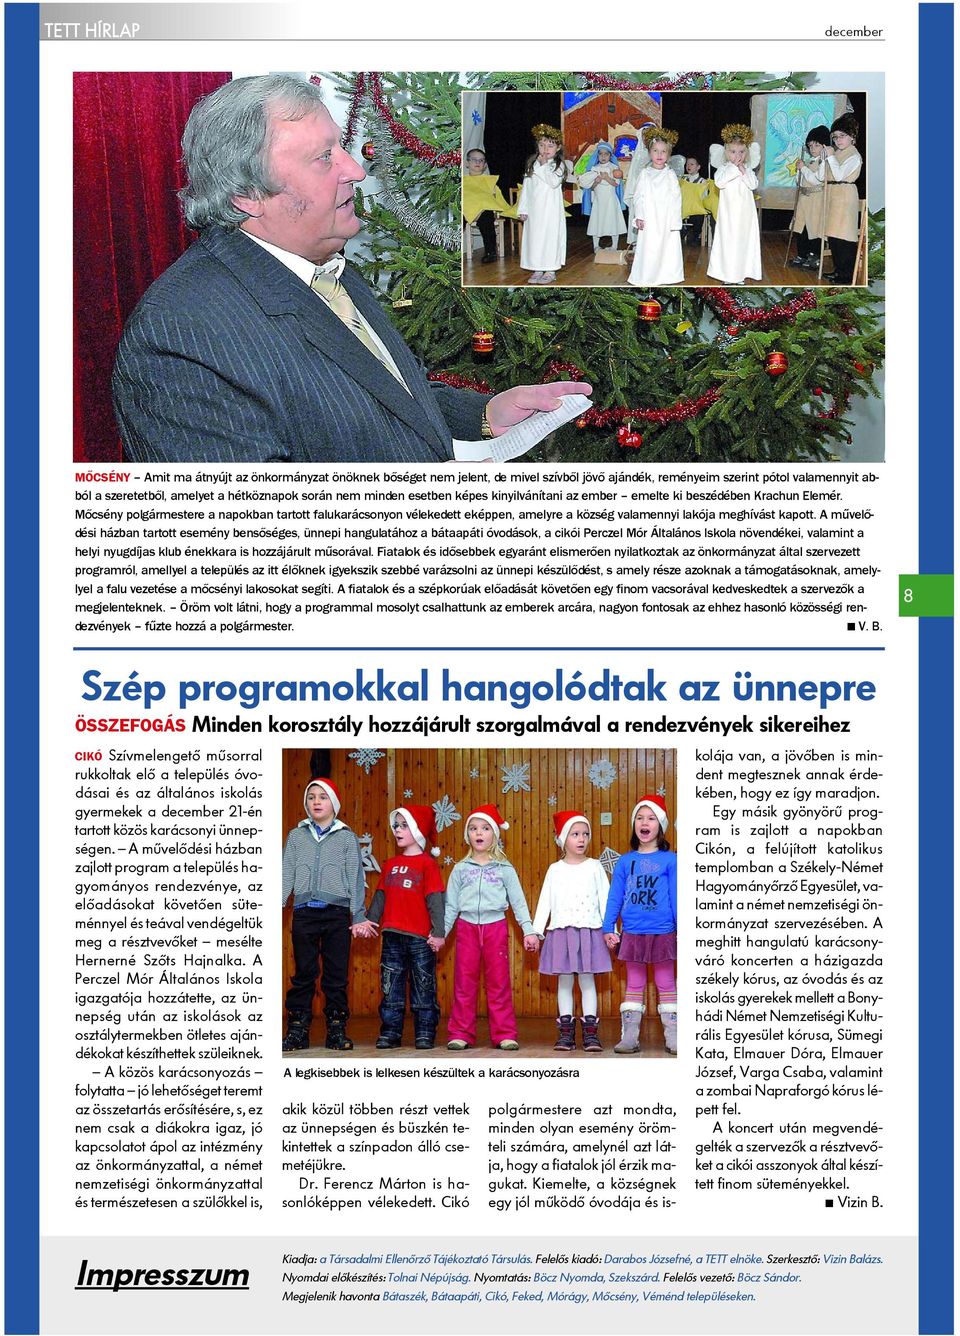 Mõcsény polgármestere a napokban tartott falukarácsonyon vélekedett eképpen, amelyre a község valamennyi lakója meghívást kapott.